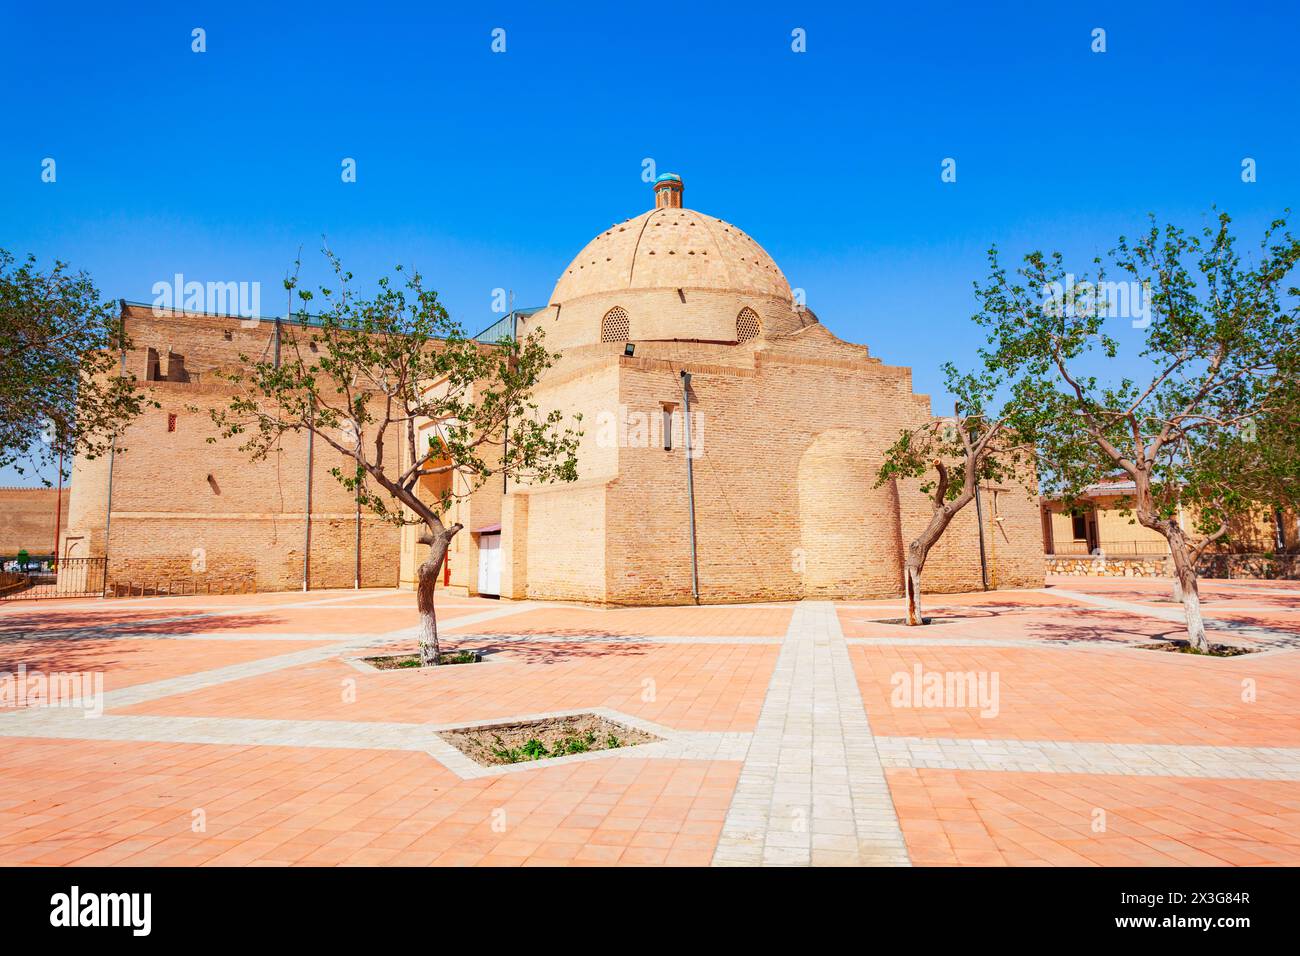 La mosquée Bolo Haouz ou Bolo Khauz est une mosquée historique, située en face de la forteresse Ark à Boukhara, en Ouzbékistan Banque D'Images